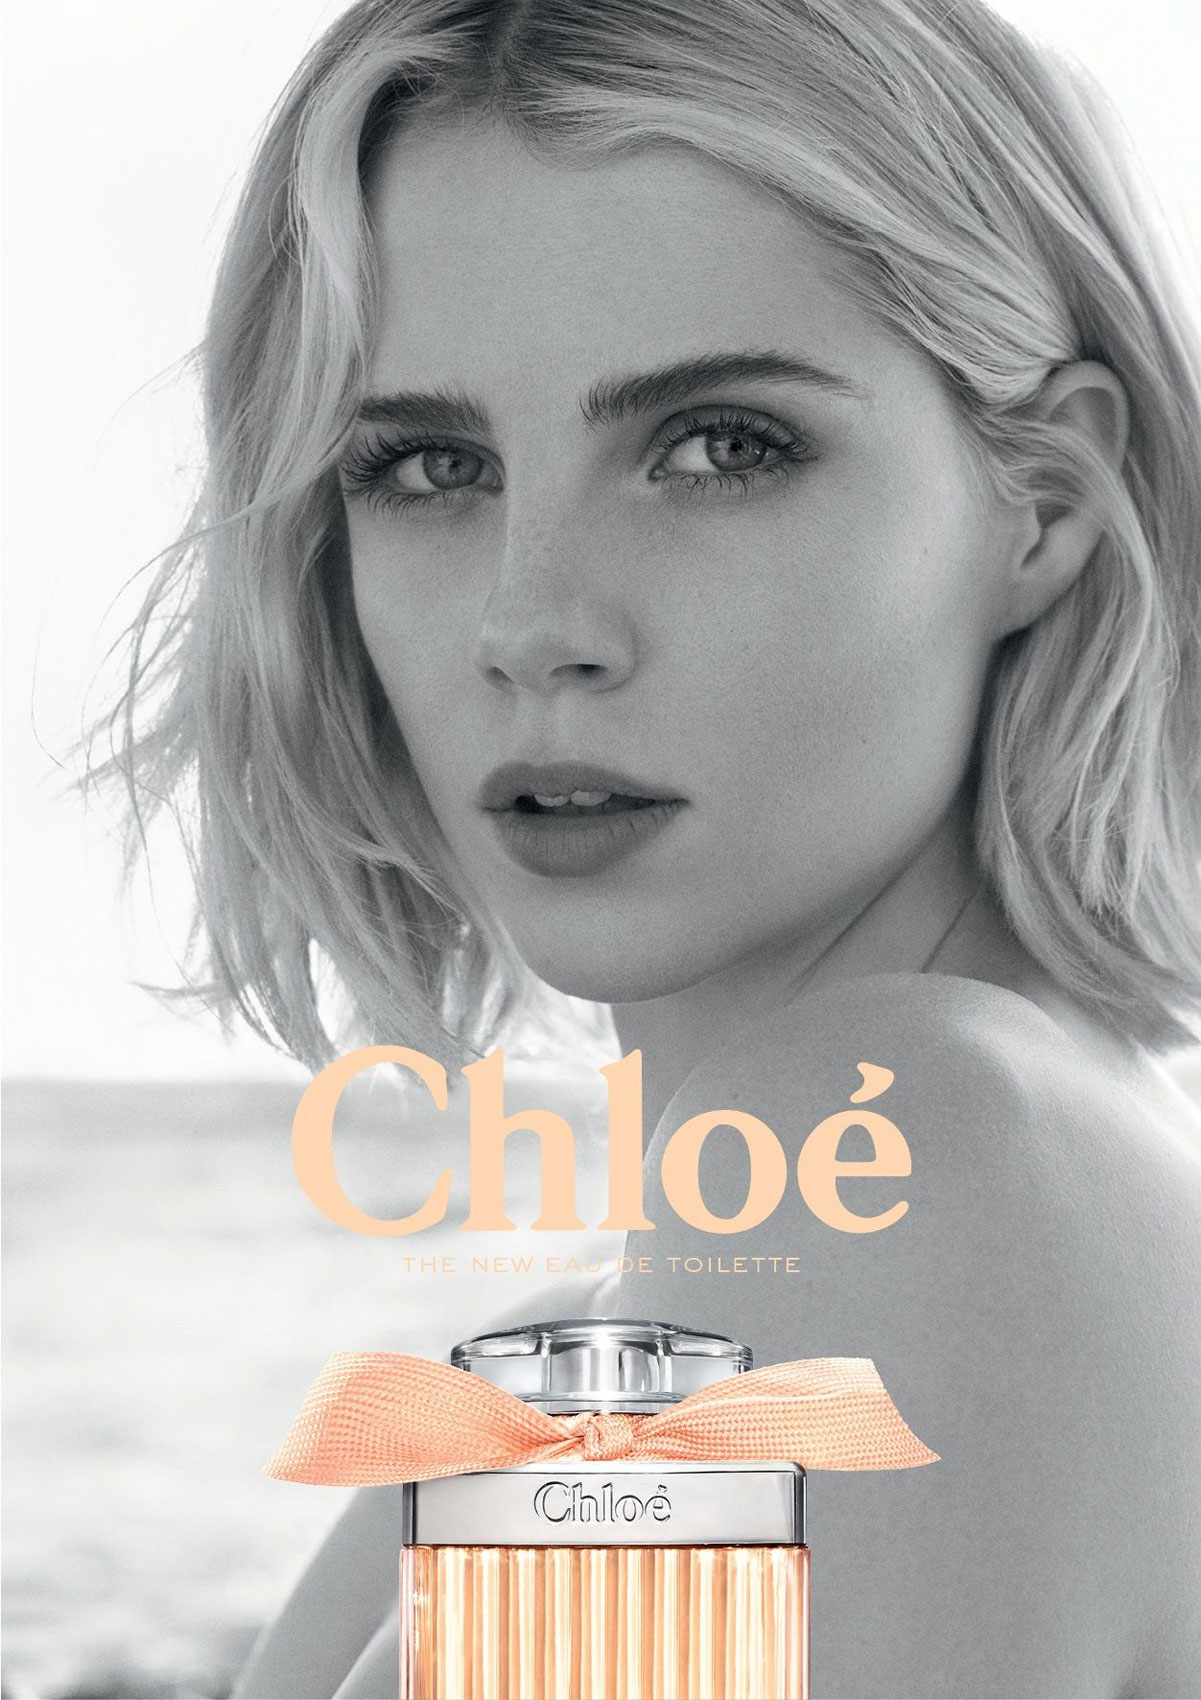 Chloe Rose Tangerine Fragrance Ad